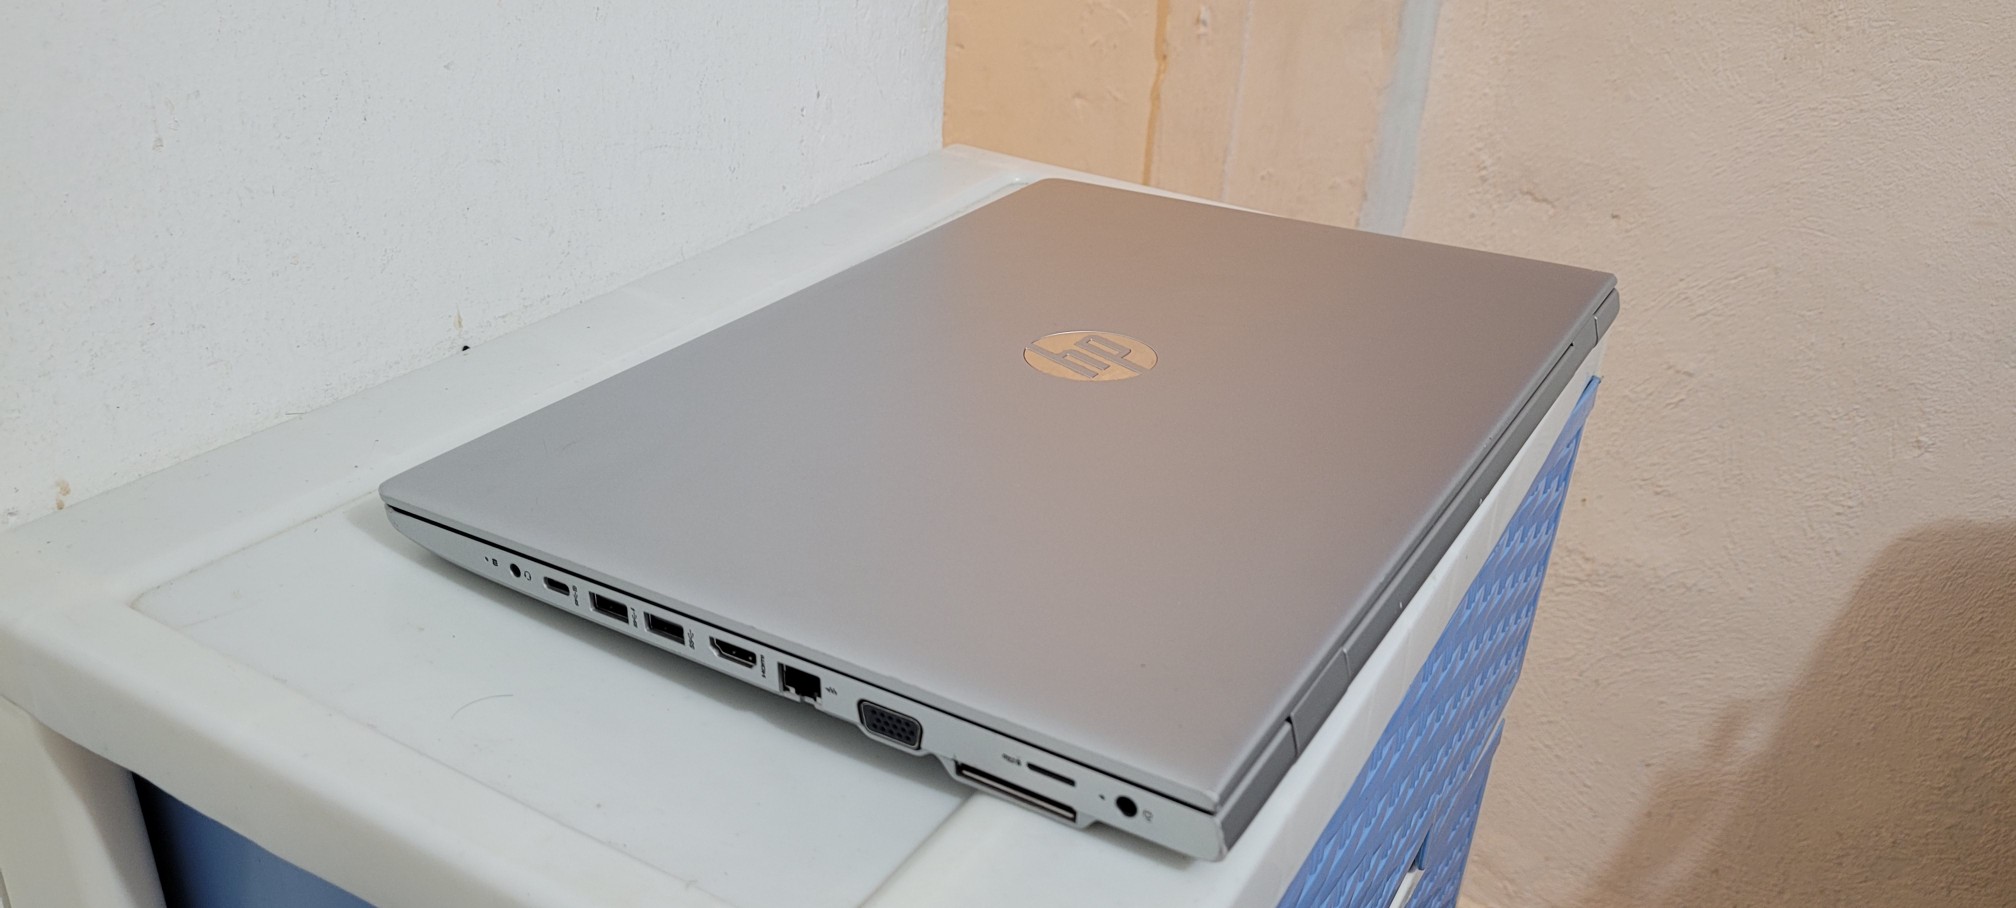 computadoras y laptops - laptop hp G4 17 Pulg Core i5 7ma Gen Ram 8gb ddr4 Disco 256gb SSD Y 320gb New 2